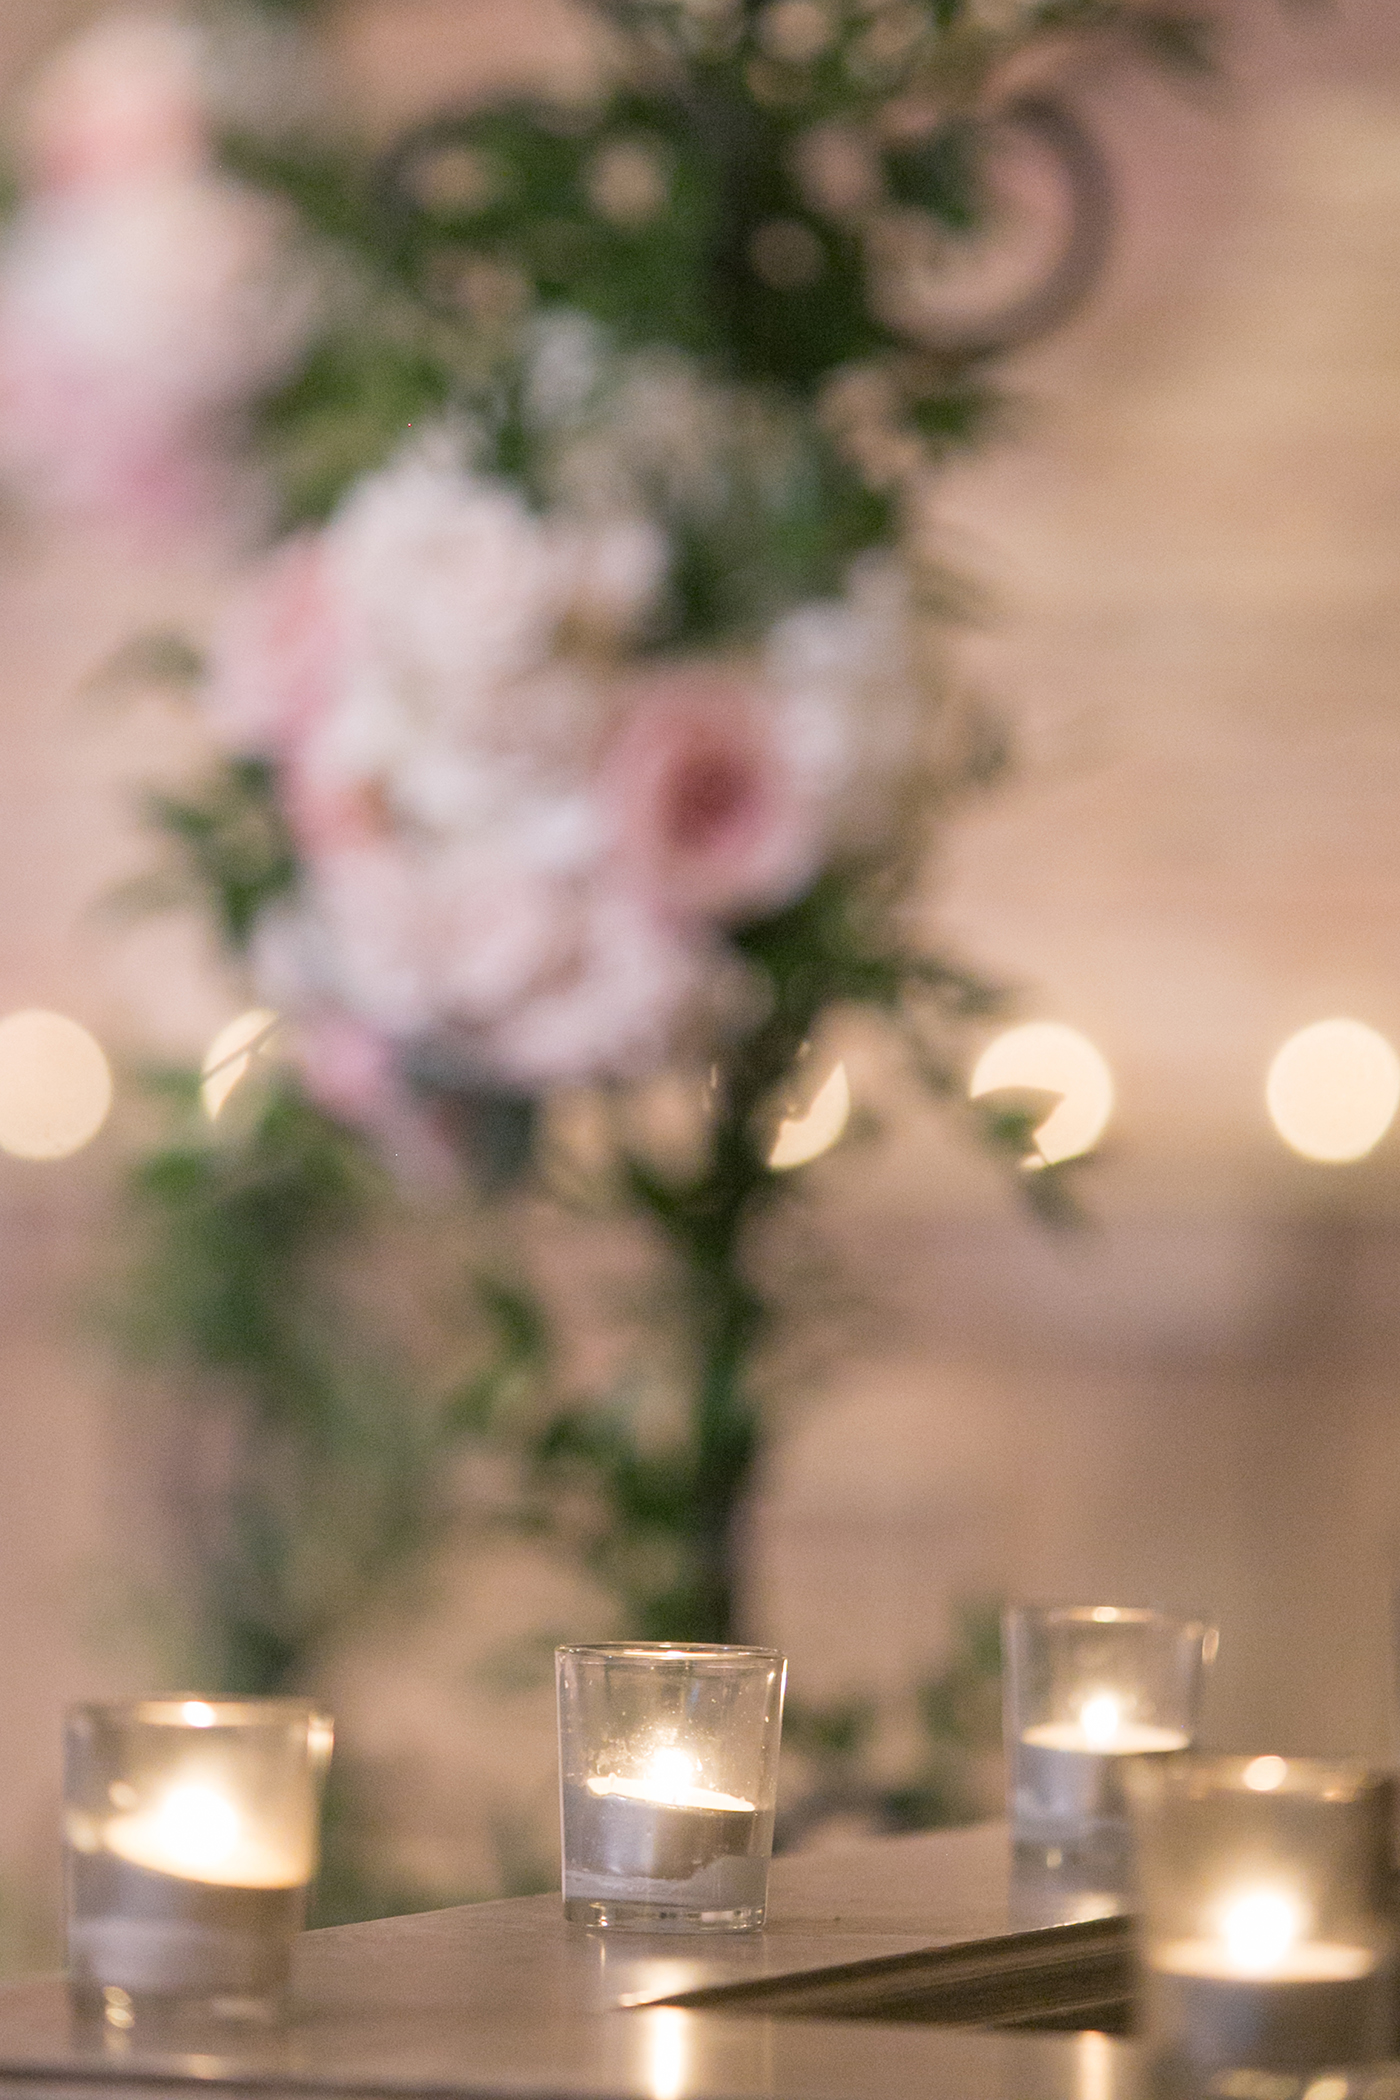 Fort Worth Wedding Floral Design - A Stylish Soiree - Sabrina + Bryan 